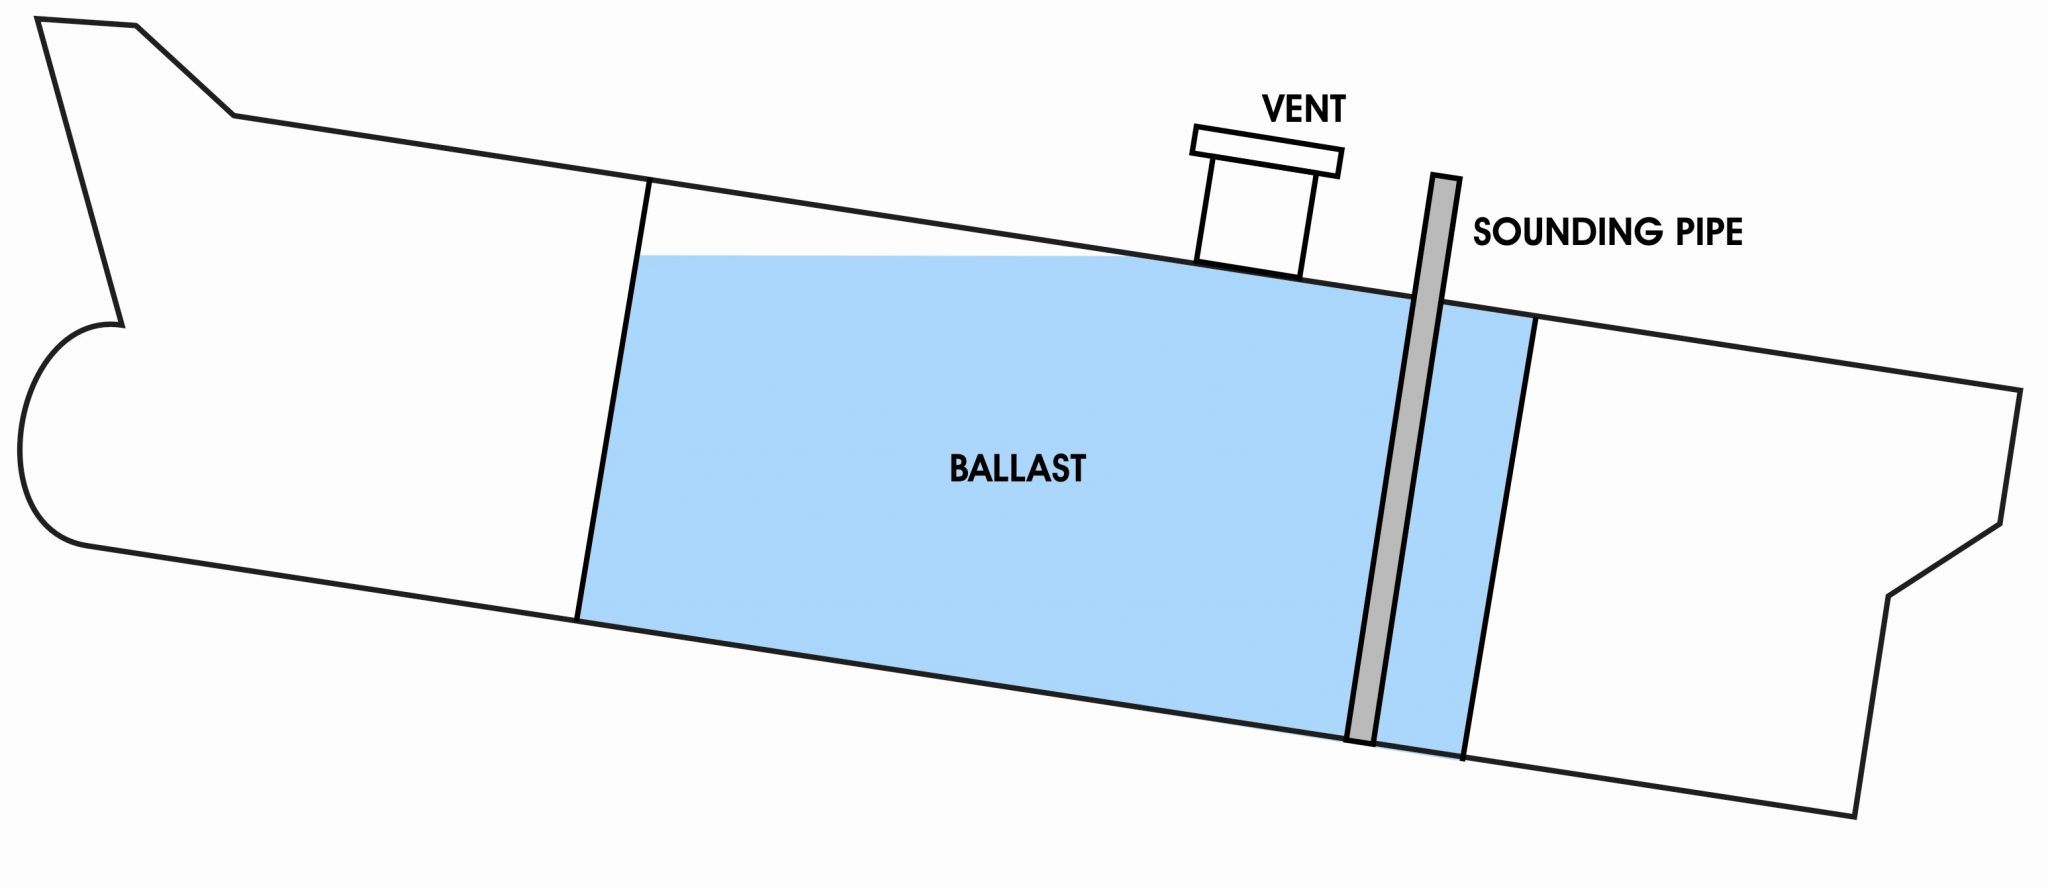 ballast vessel meaning